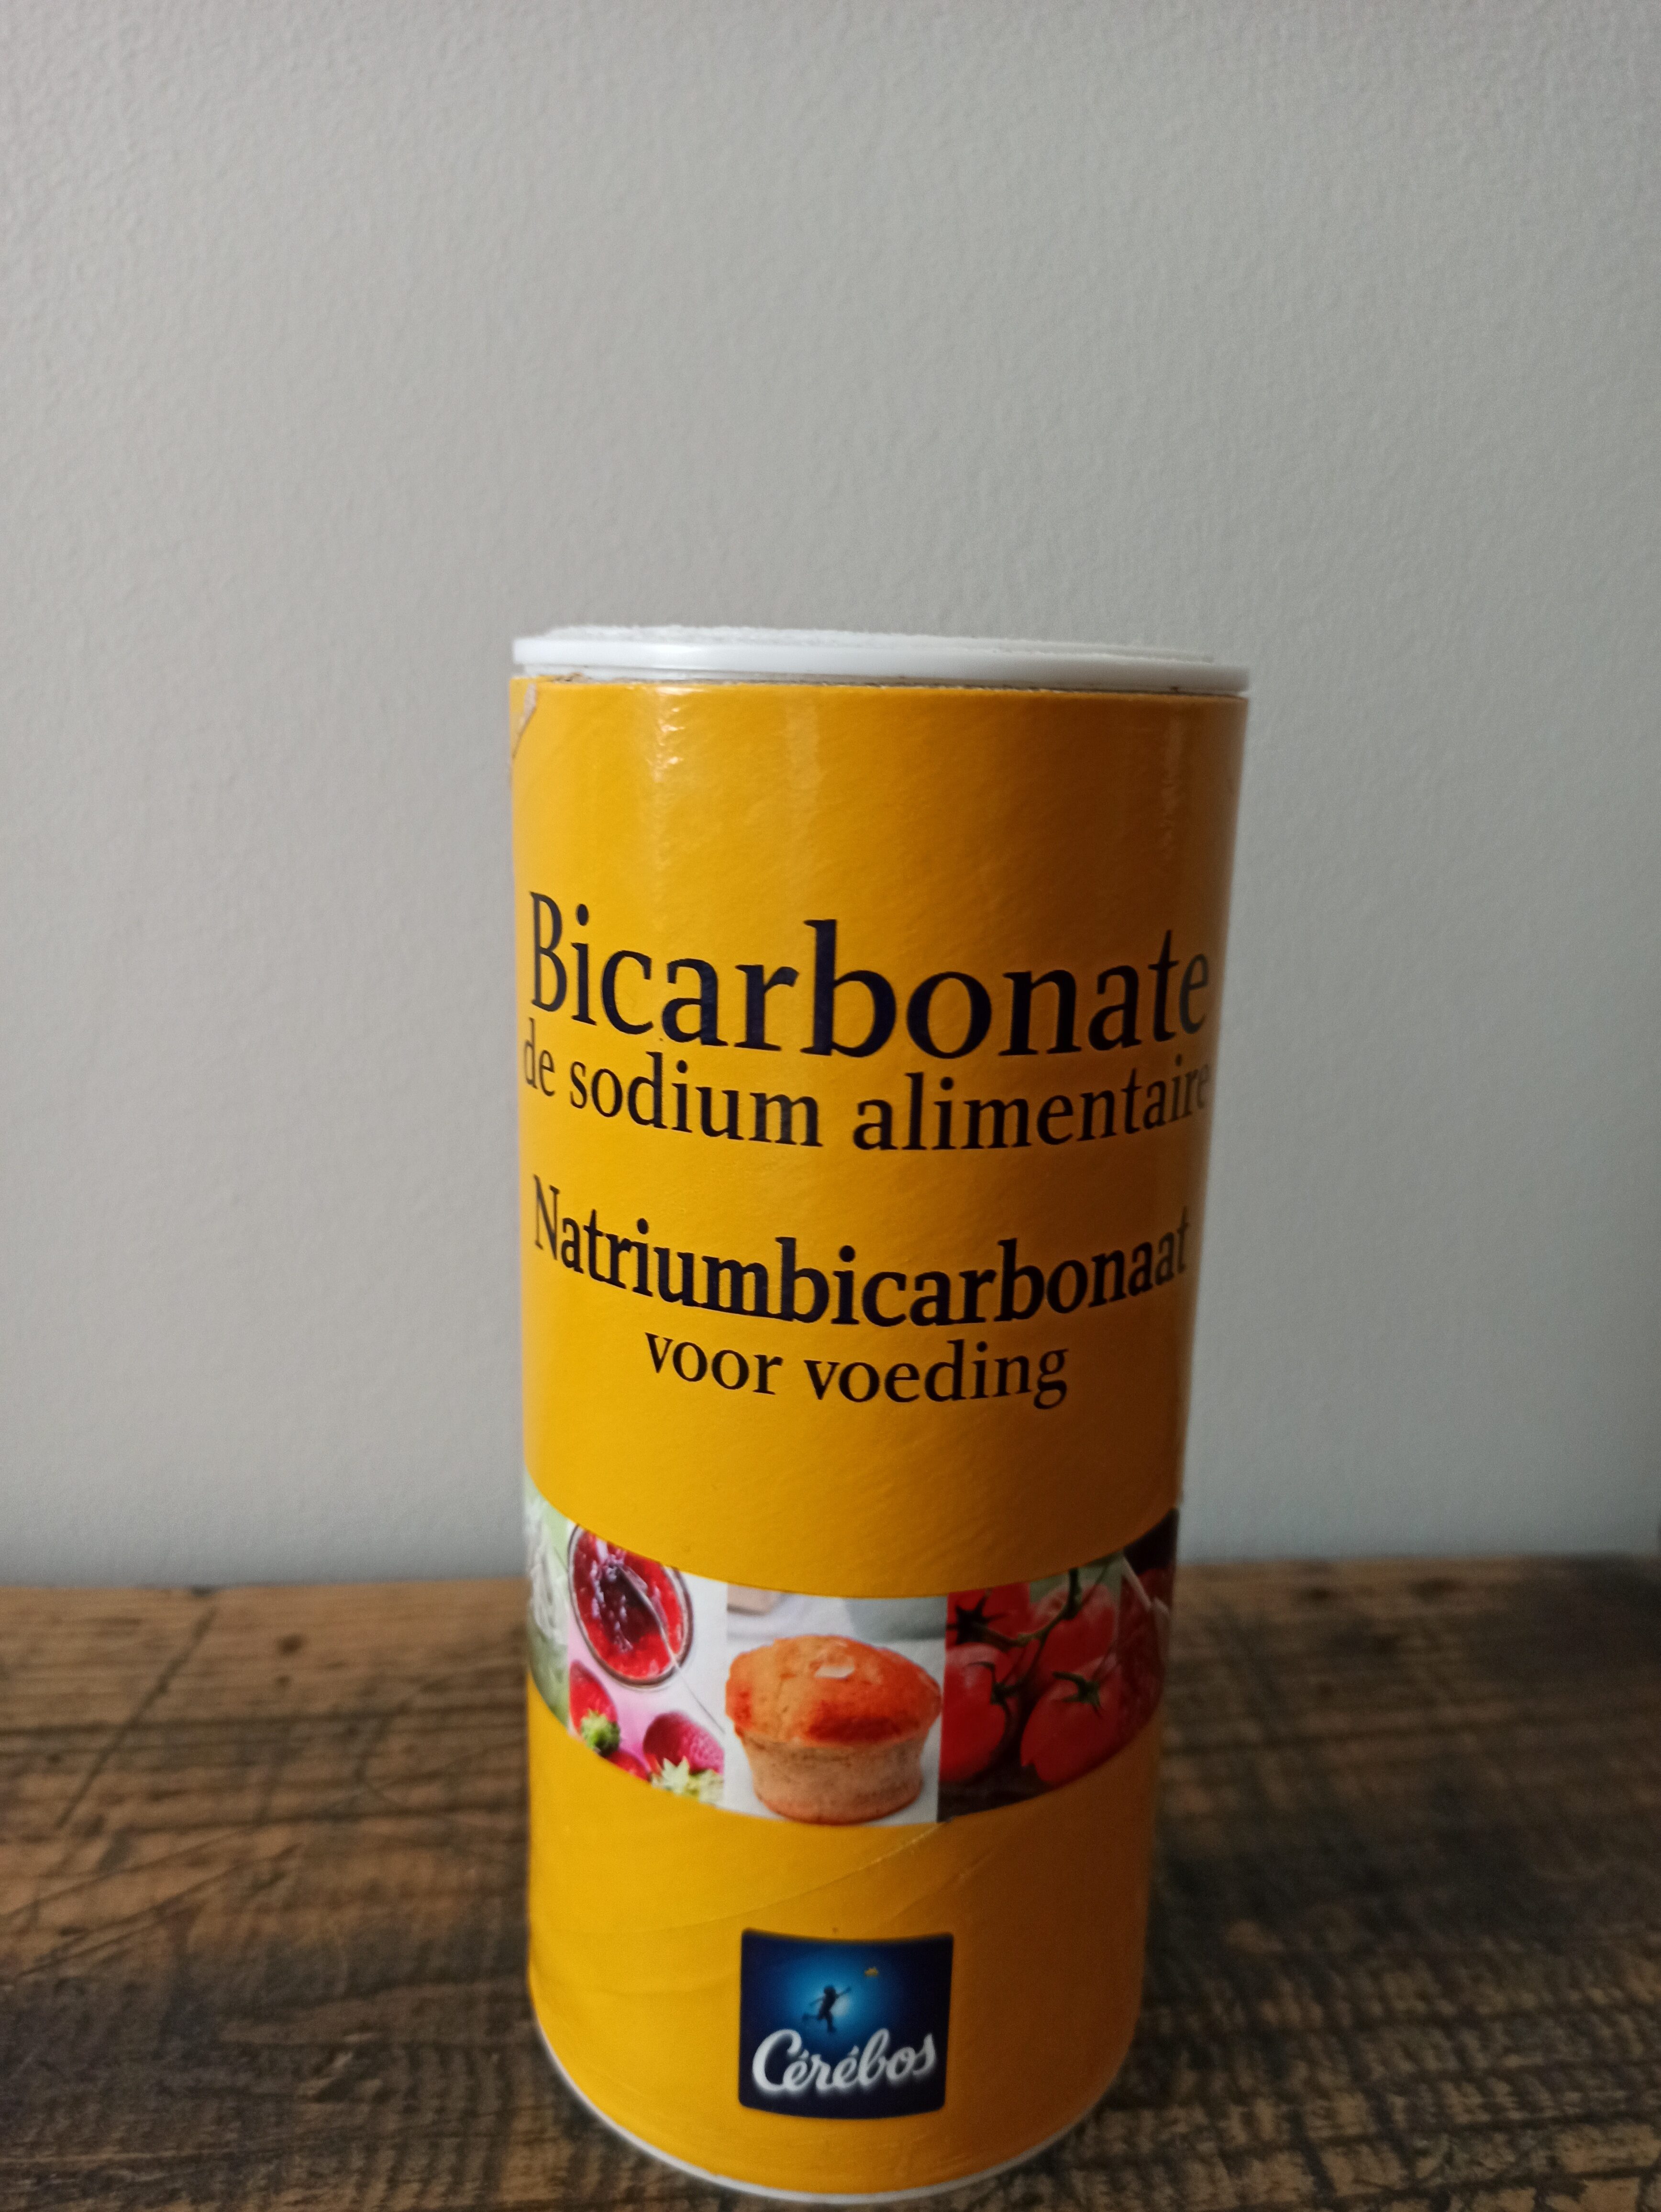 Bicarbonate de sodium alimentaire